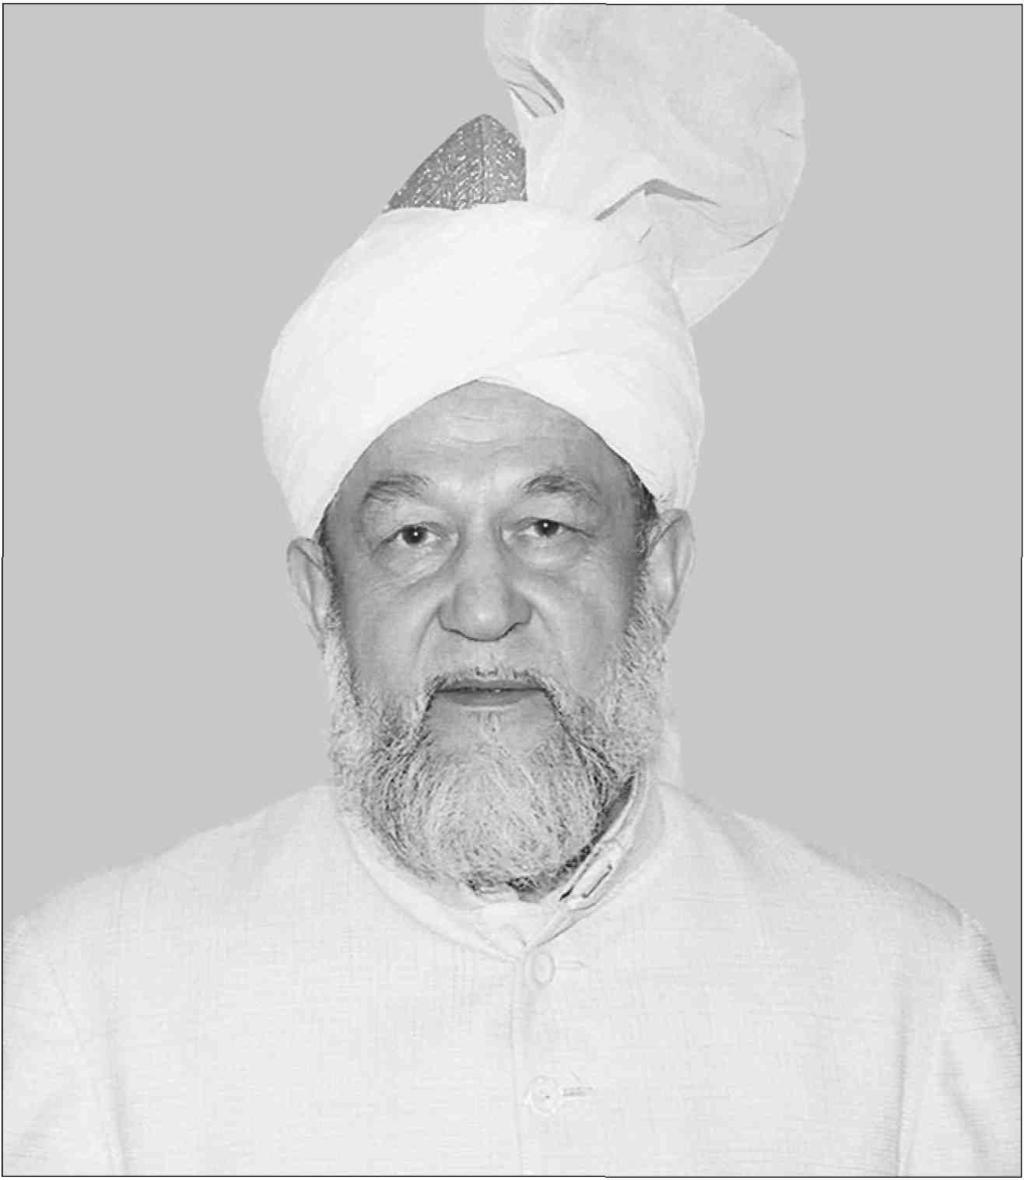 Hadhrat Mirza Tahir Ahmad RH (1928-2003) Vierter Kalif des